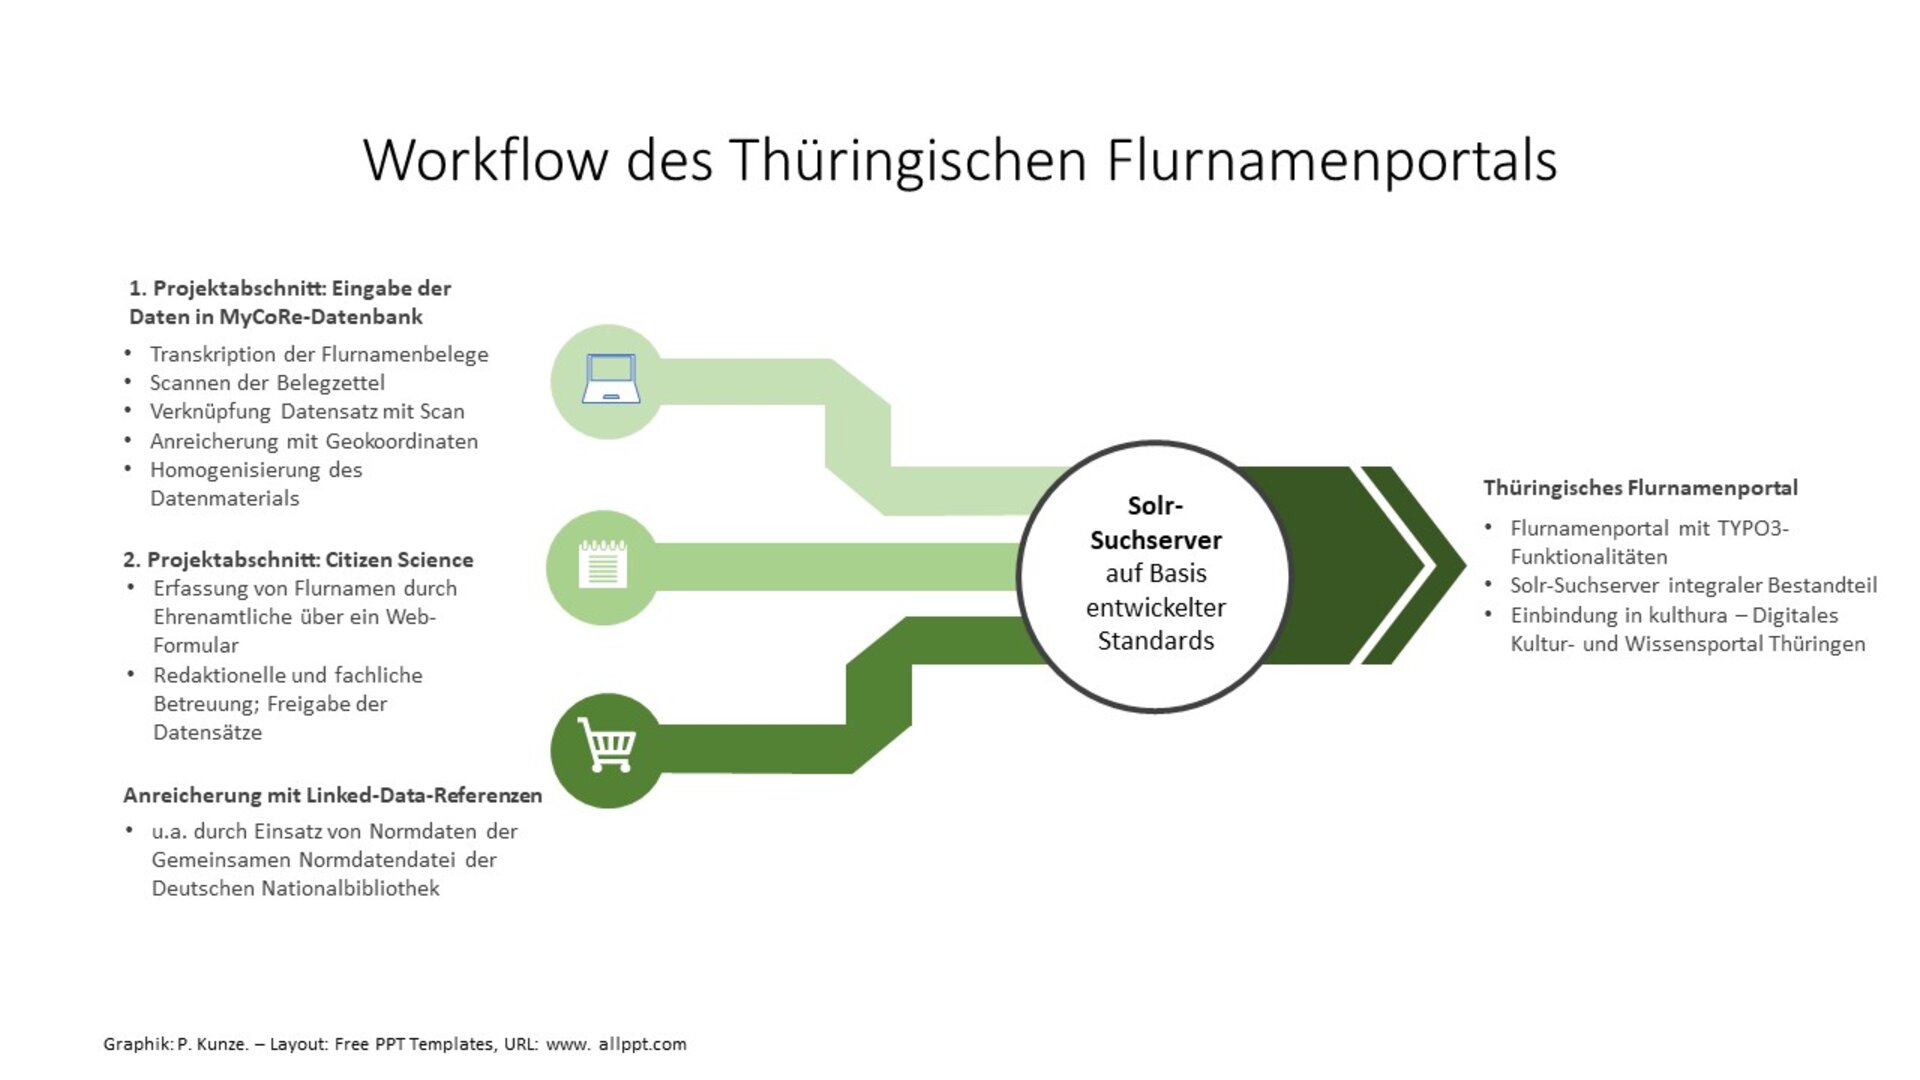 Die beschriftete Grafik verdeutlicht den Workflow im Thüringischen Flurnamenprojekt